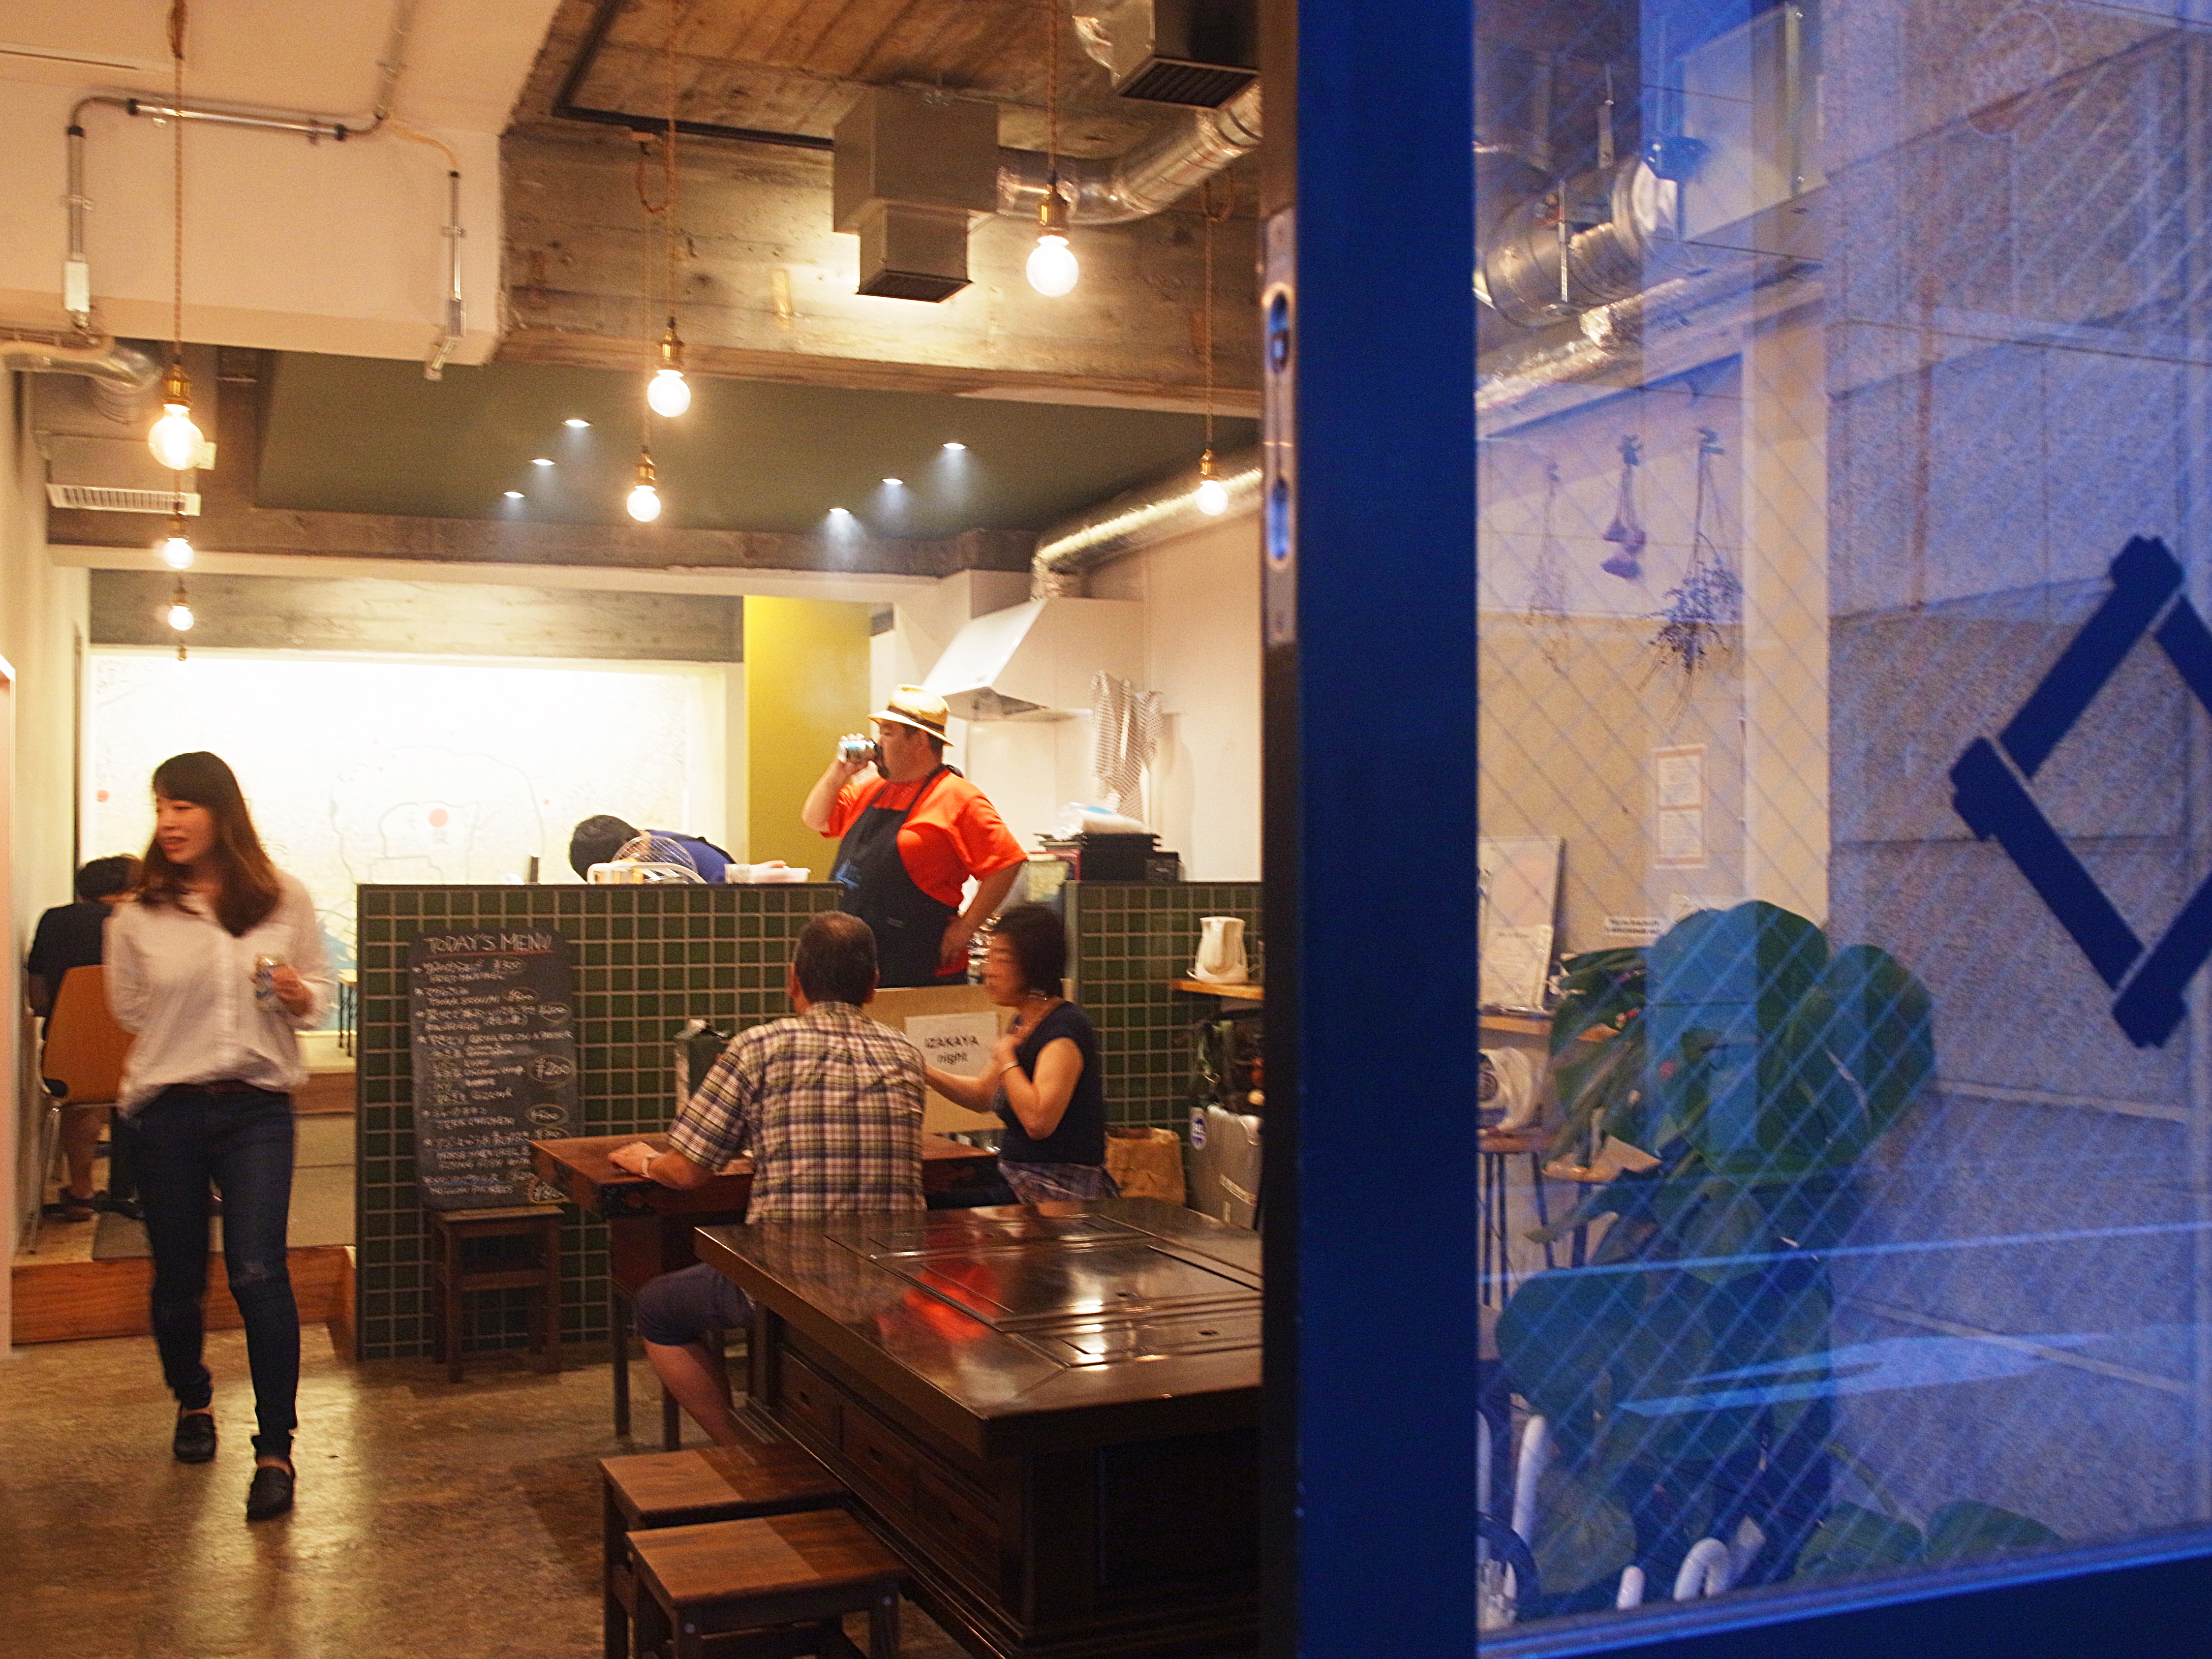 『IRORI NIHONBASHI HOTEL and KITCHEN』（東京・馬喰横山）１階の共用キッチン＆ラウンジでは、地方の食材を扱ったレストランやほら貝ワークショップなど、日本の文化や地方の魅力を伝えるイベントを不定期に開催。この日は毎月恒例の「IZAKAYA Night」が催されていた。